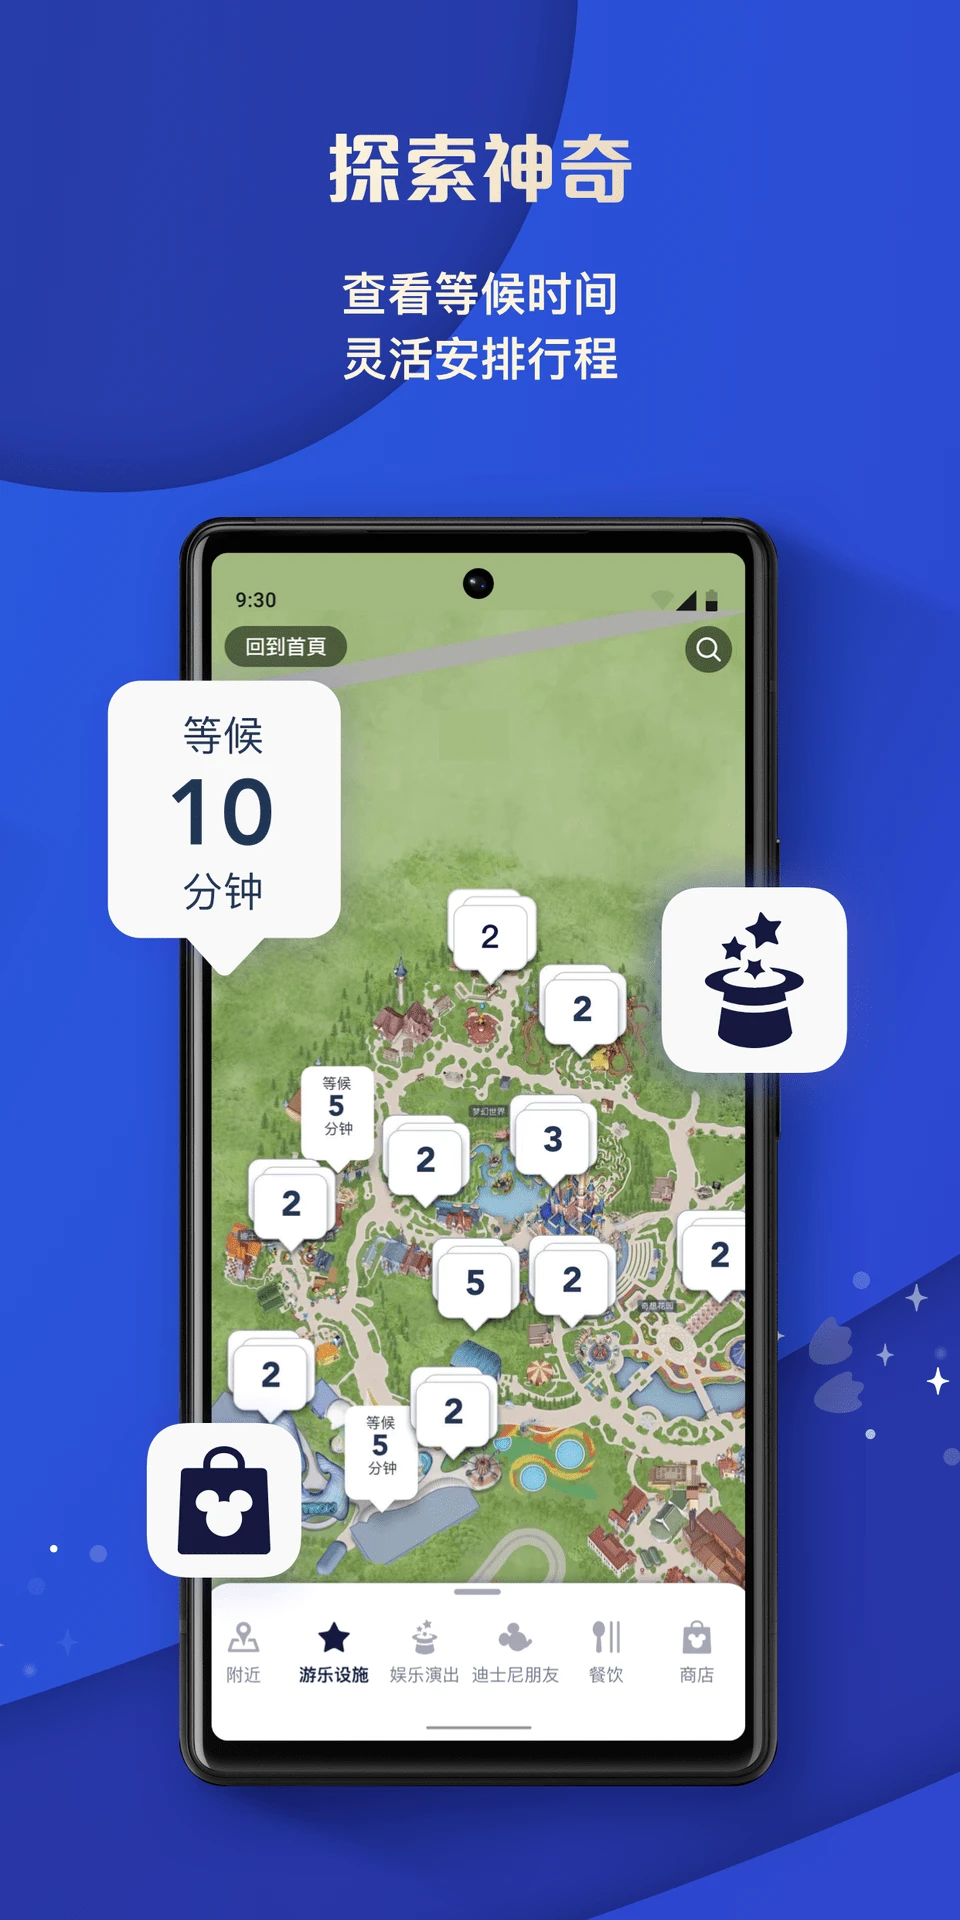 上海迪士尼度假区app界面2